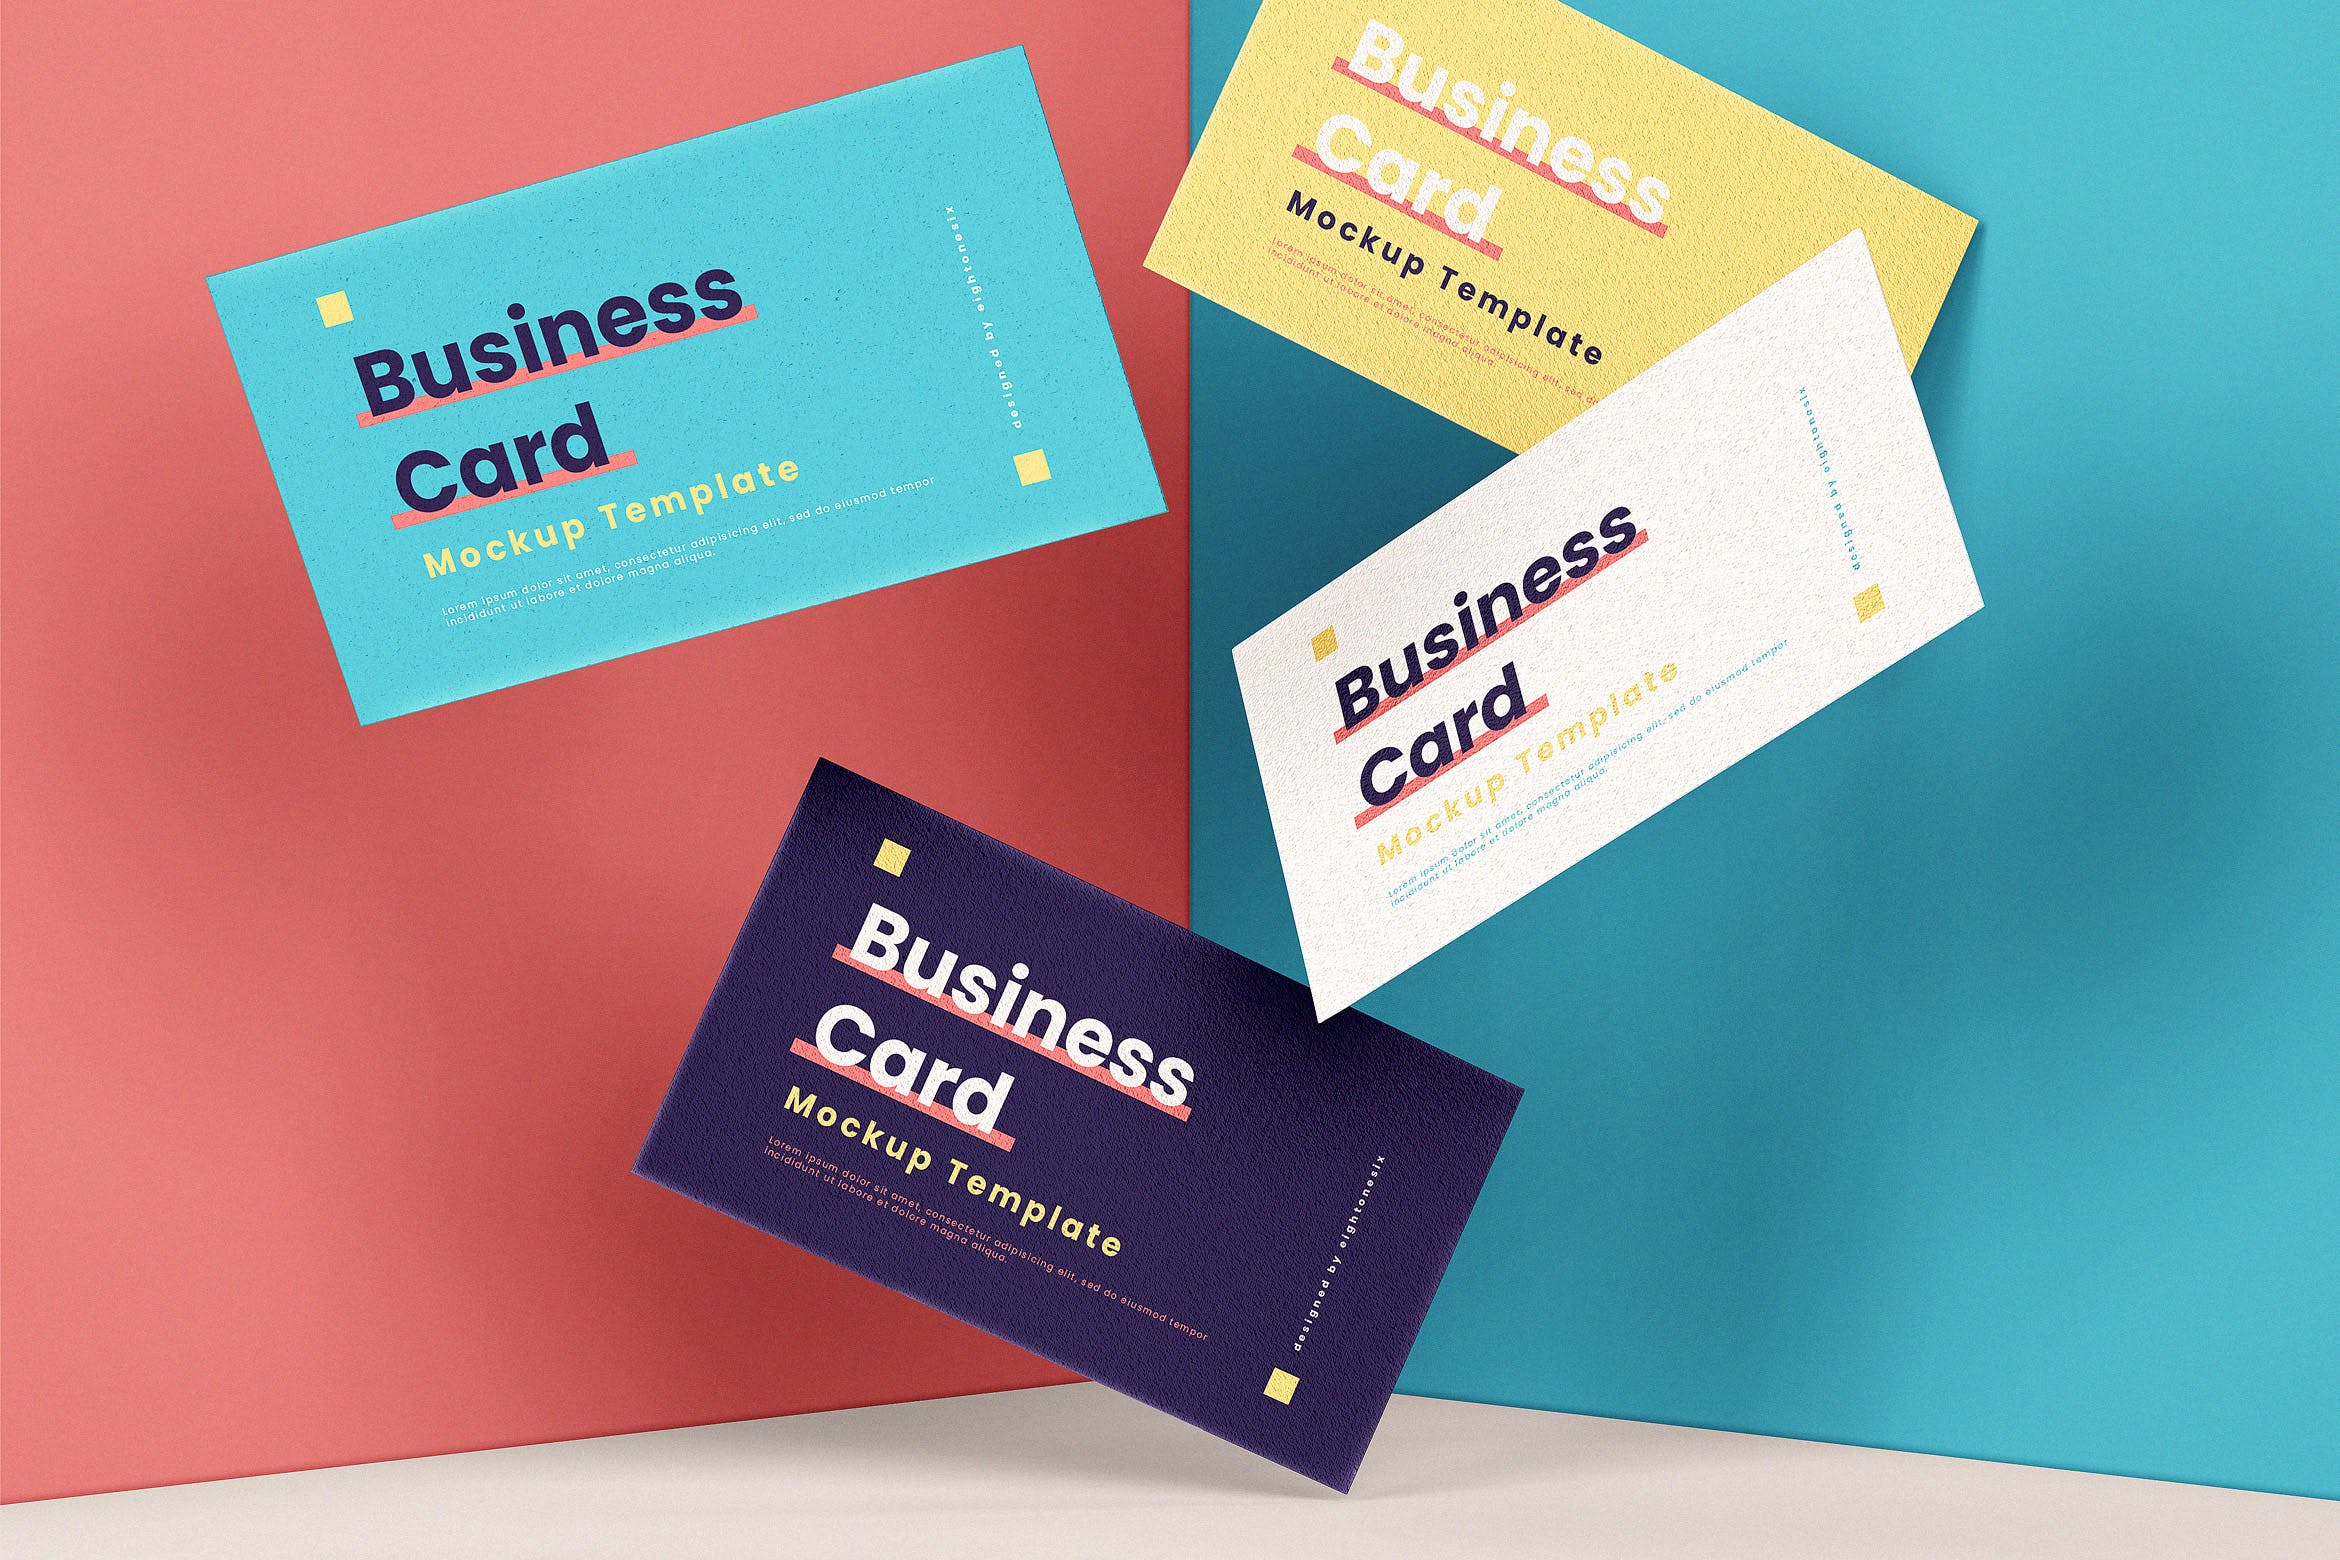 企业名片悬浮效果图蚂蚁素材精选模板 Business Card Mock-Up Template插图